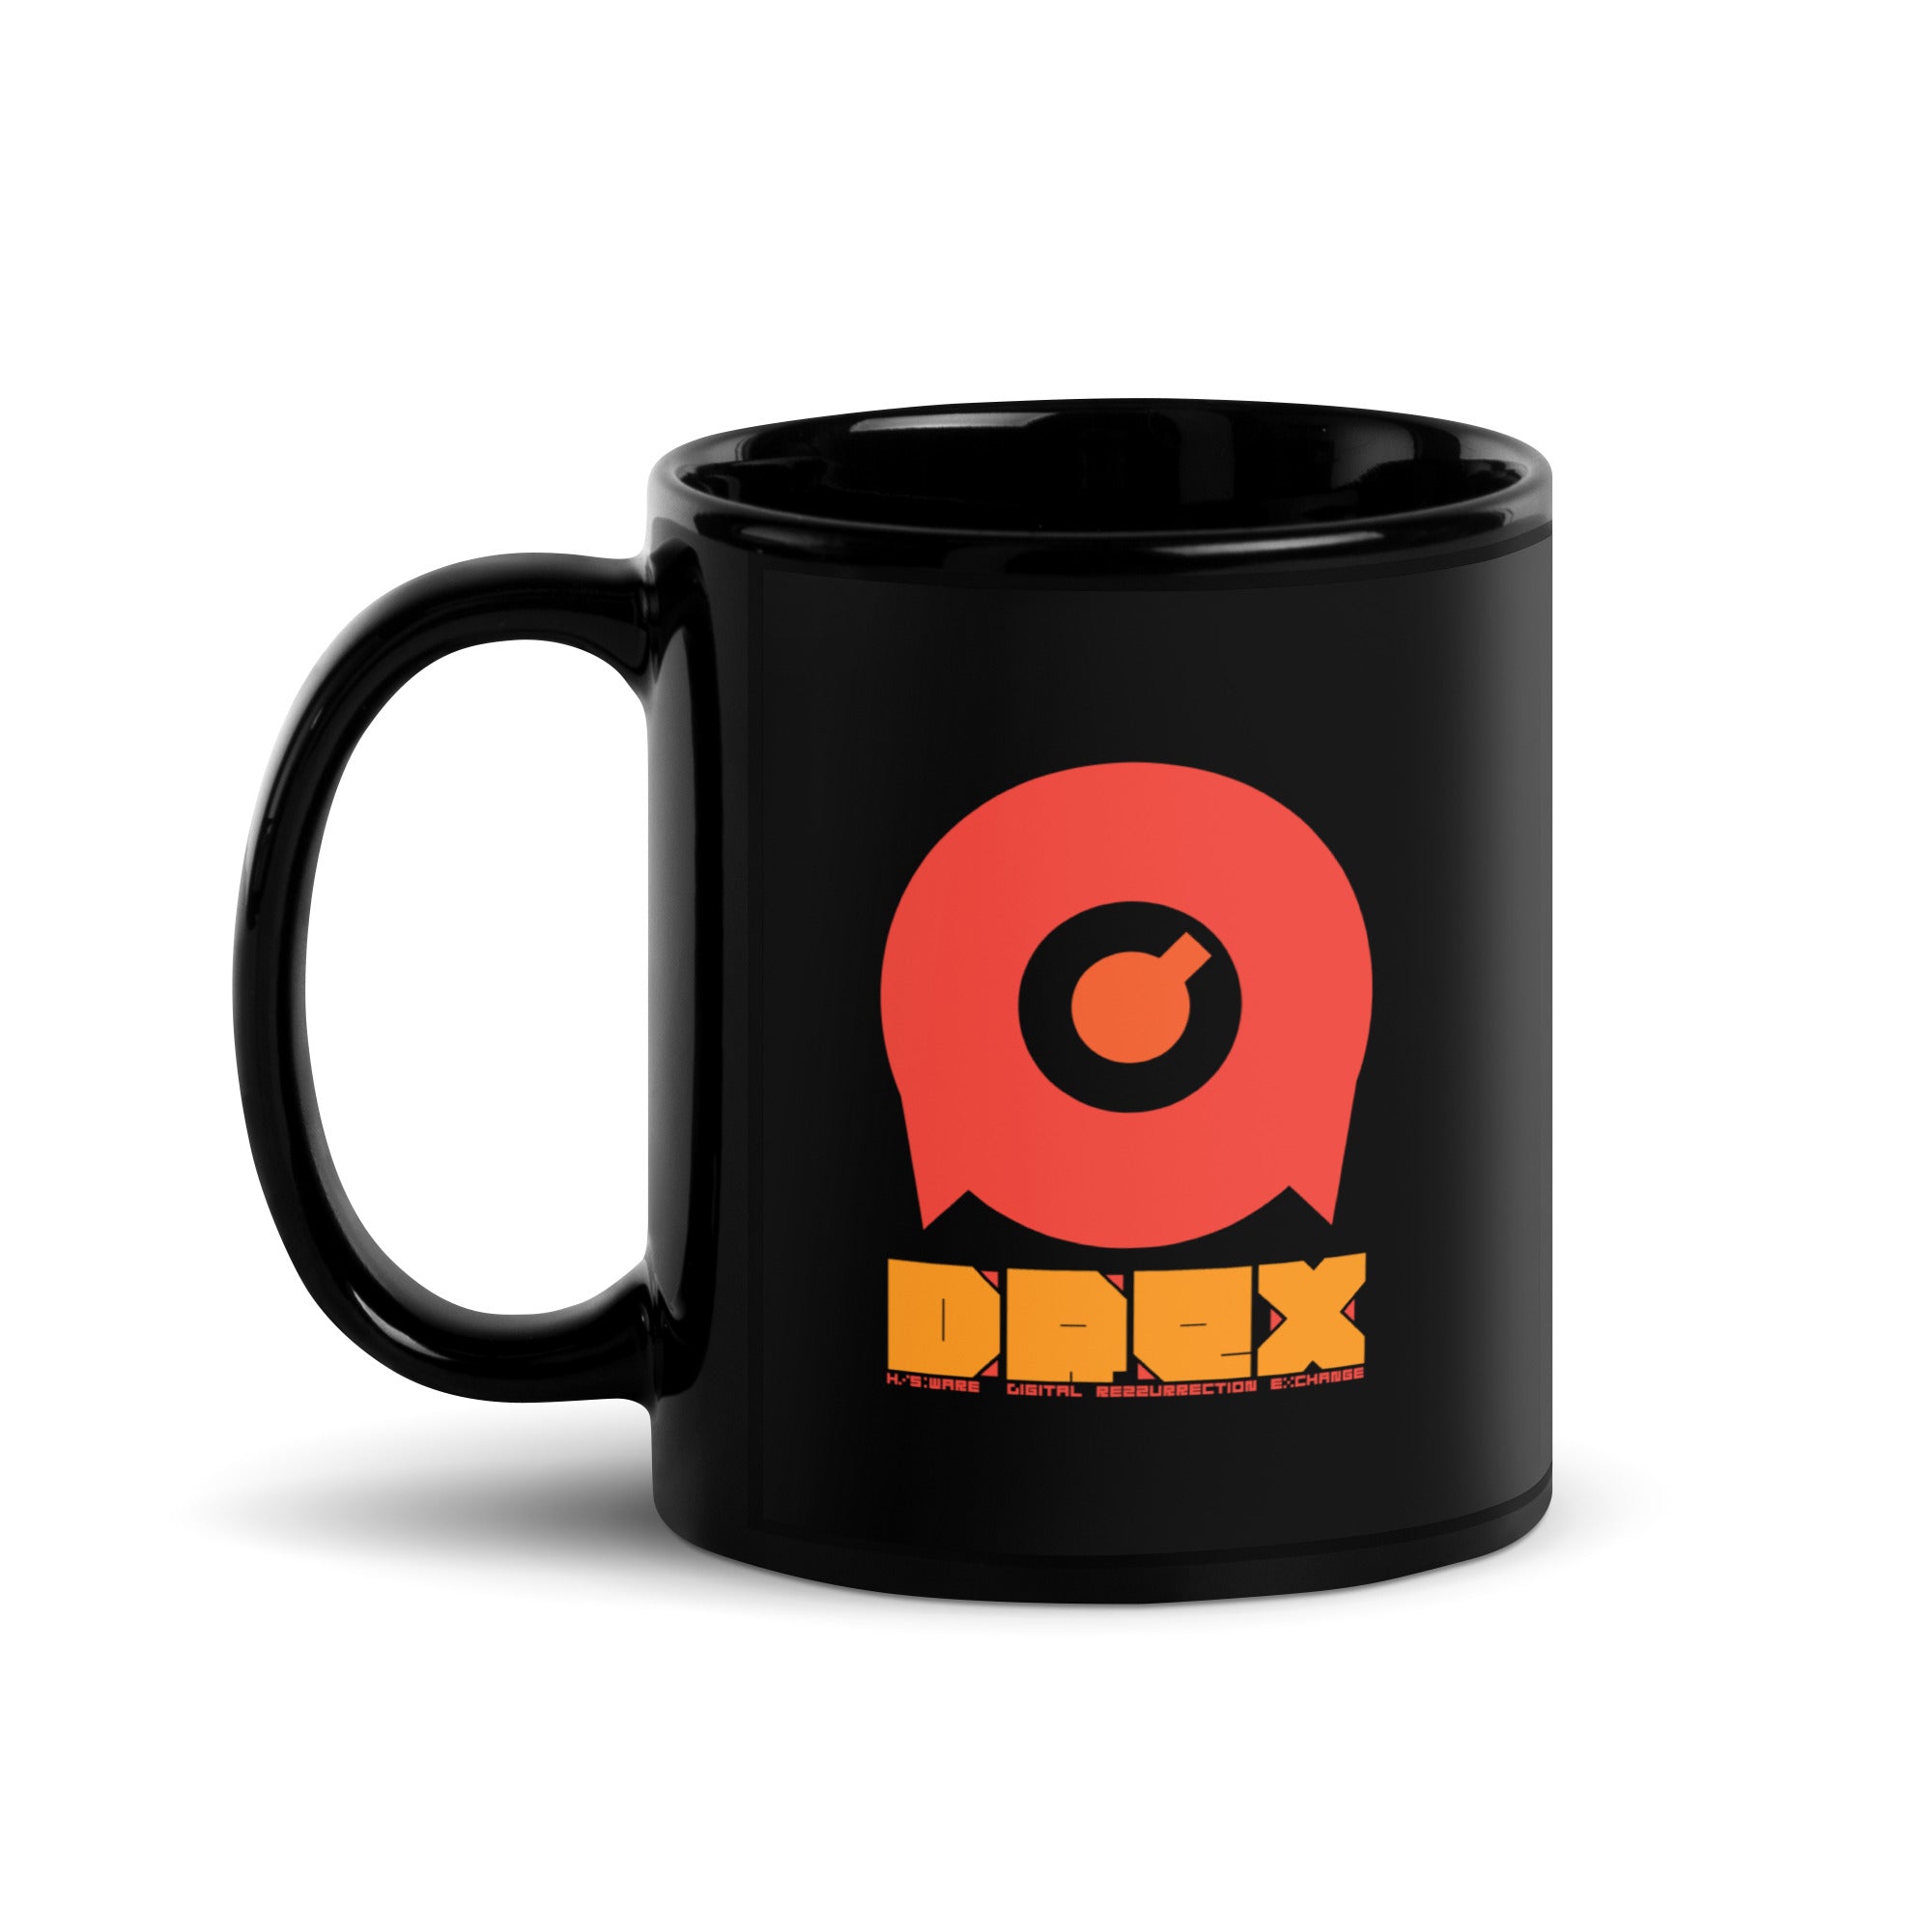 DREX Mug